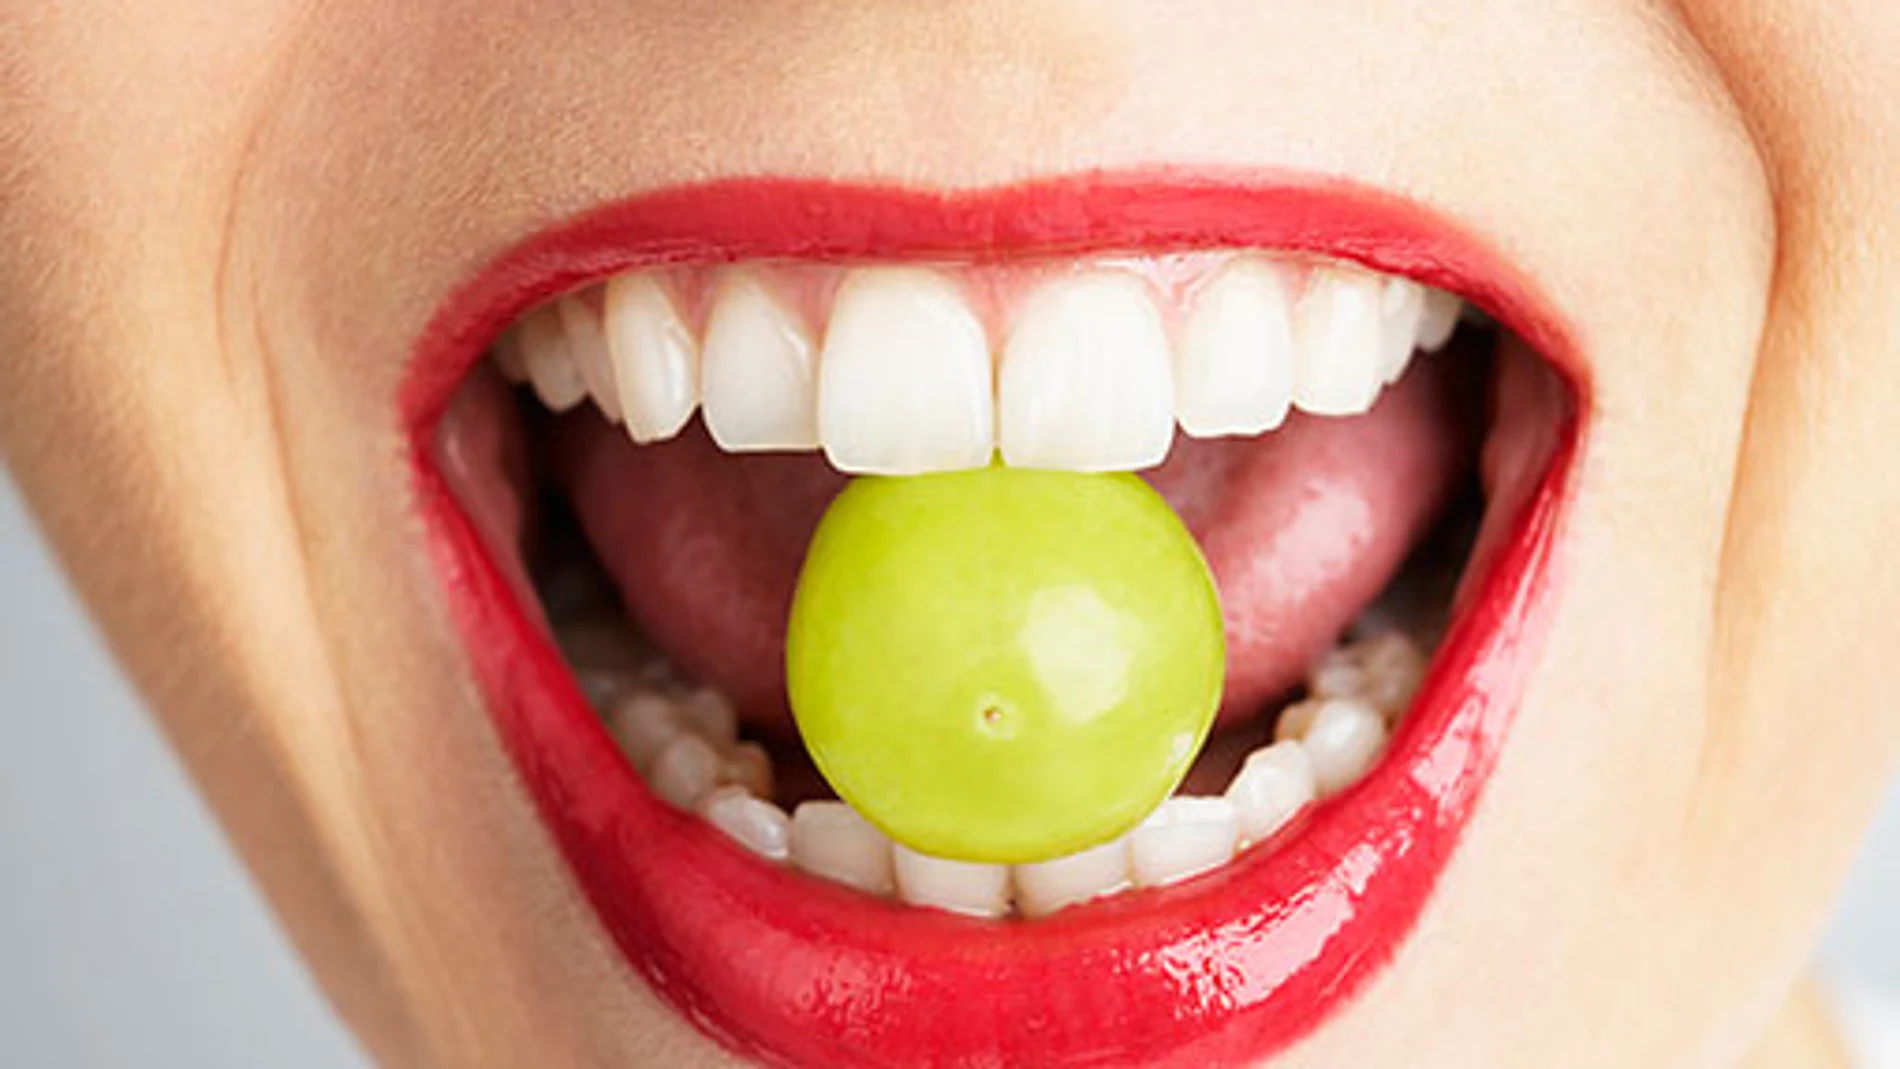 Hay una fuerte asociación entre la nutrición y las condiciones de salud bucal